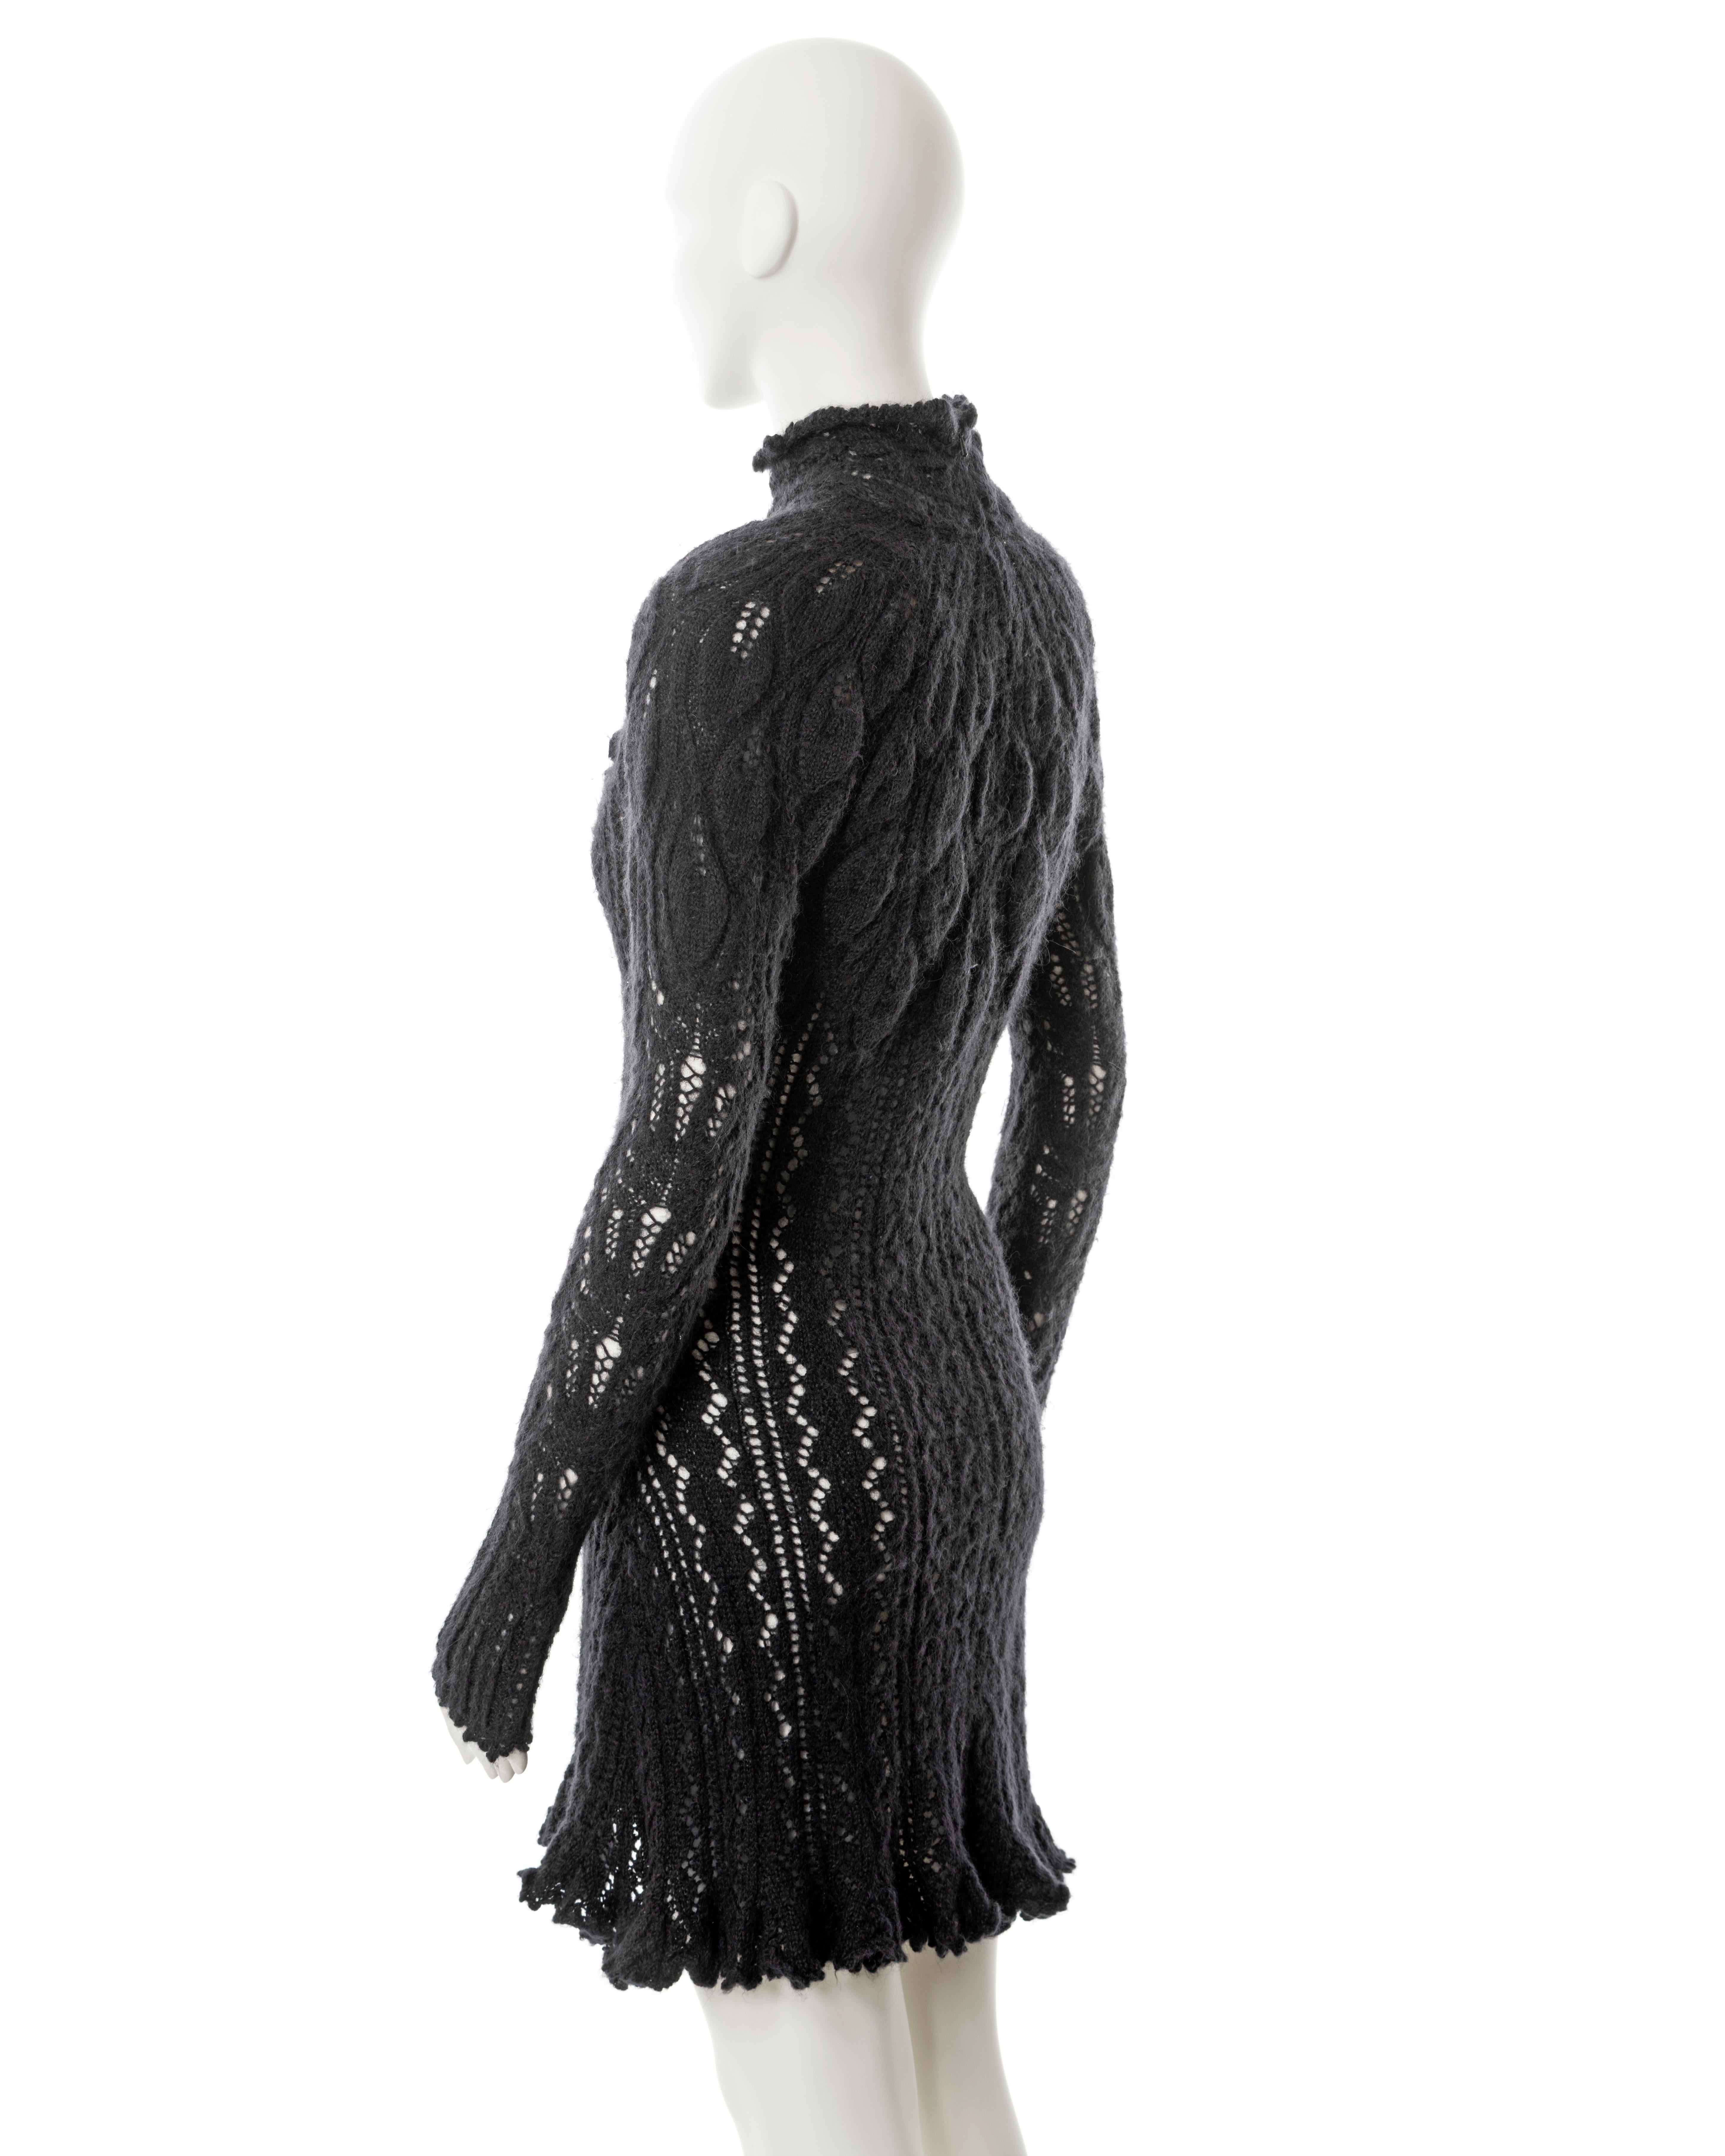 Vivienne Westwood steel-grey open knit alpaca wool corseted mini dress, fw 1993 For Sale 1